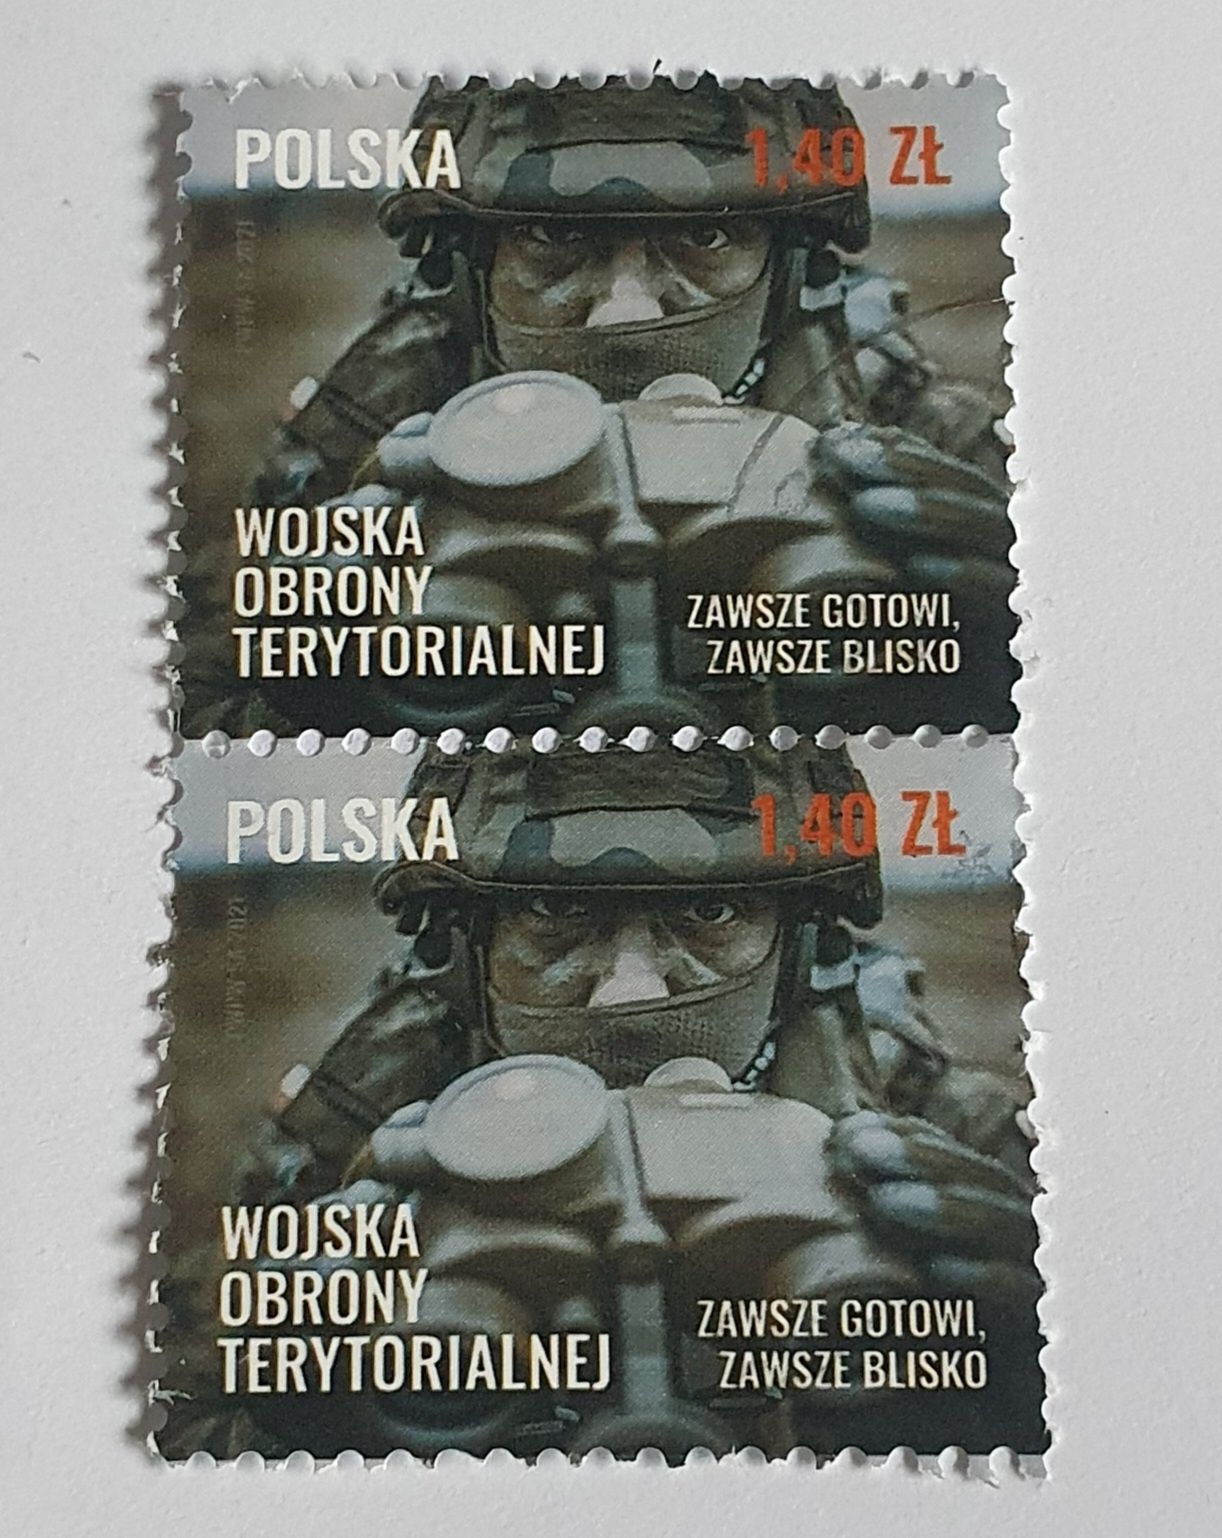 2x znaczek pocztowy Polska Wojska Obrony Terytorialnej